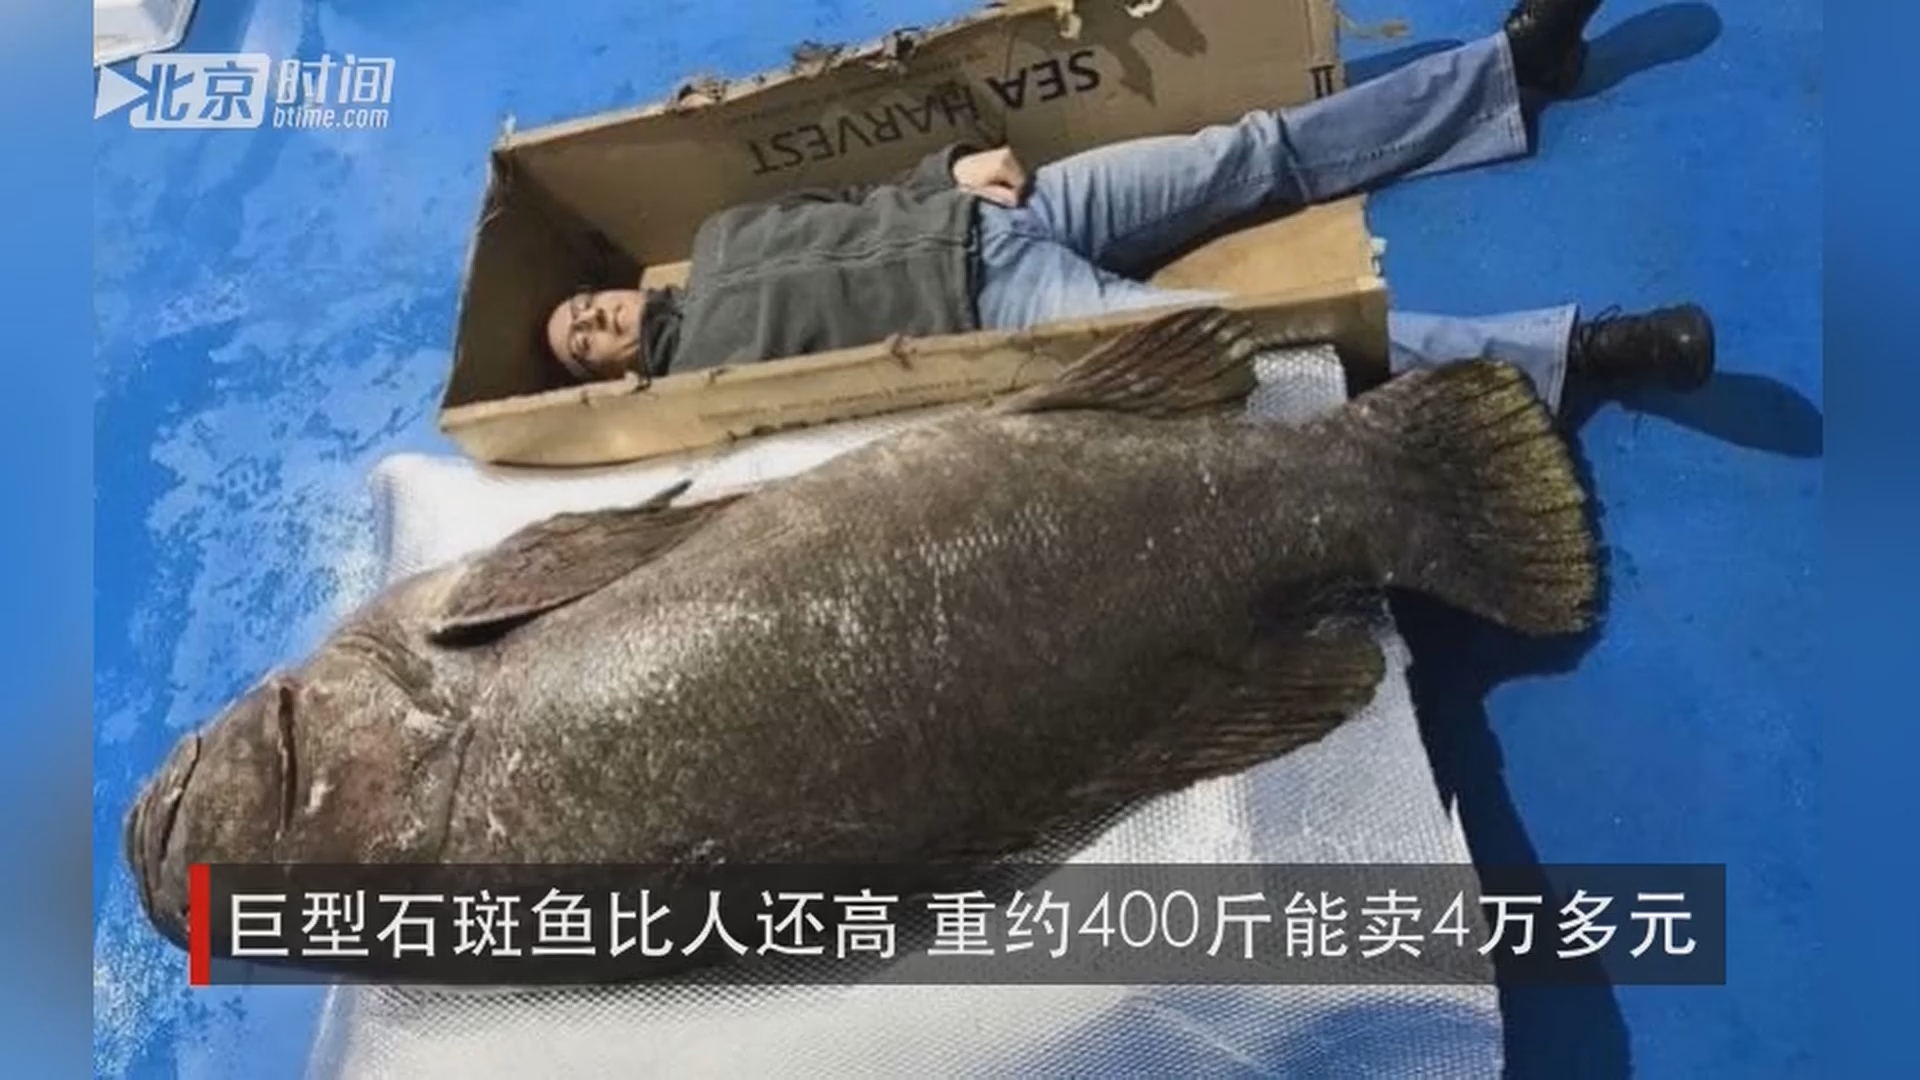 巨型石斑鱼比人还高 重约400斤能卖4万多元